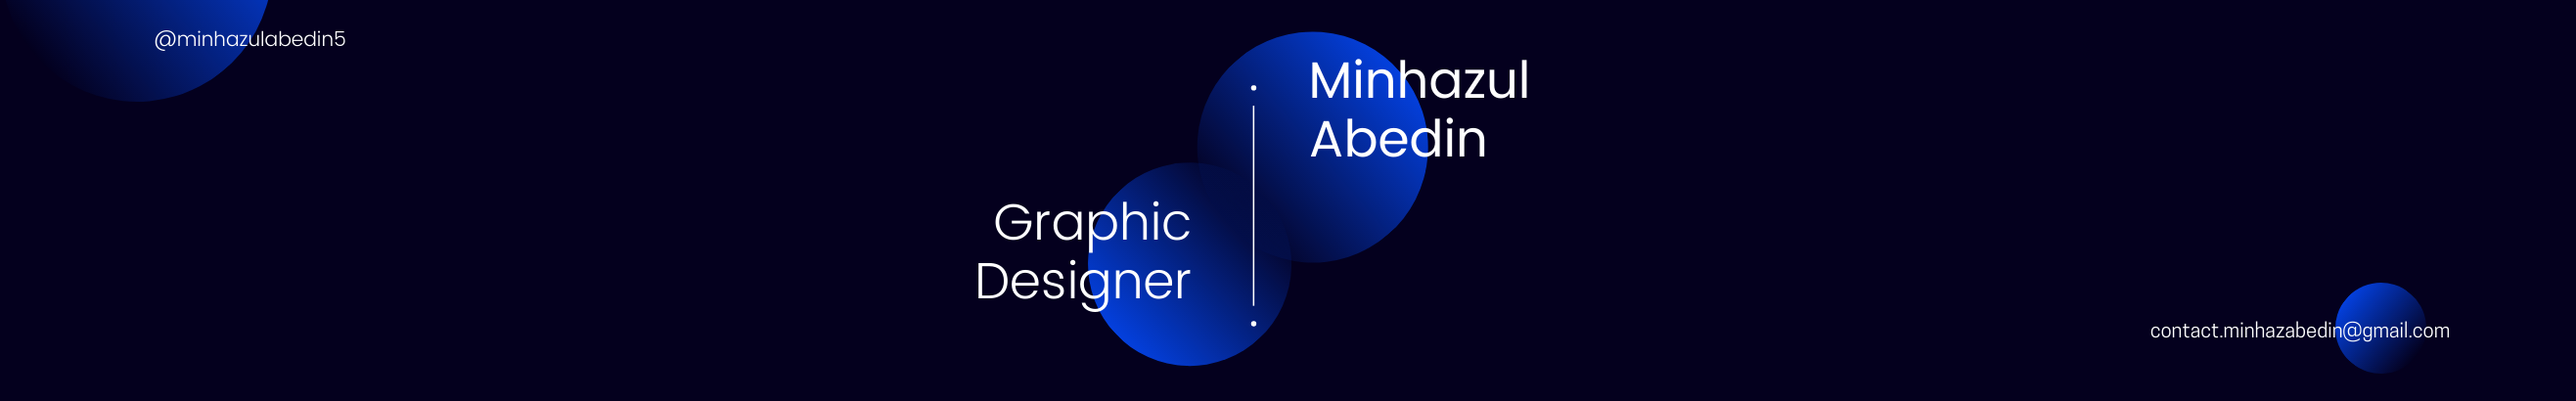 Baner profilu użytkownika Minhazul Abedin